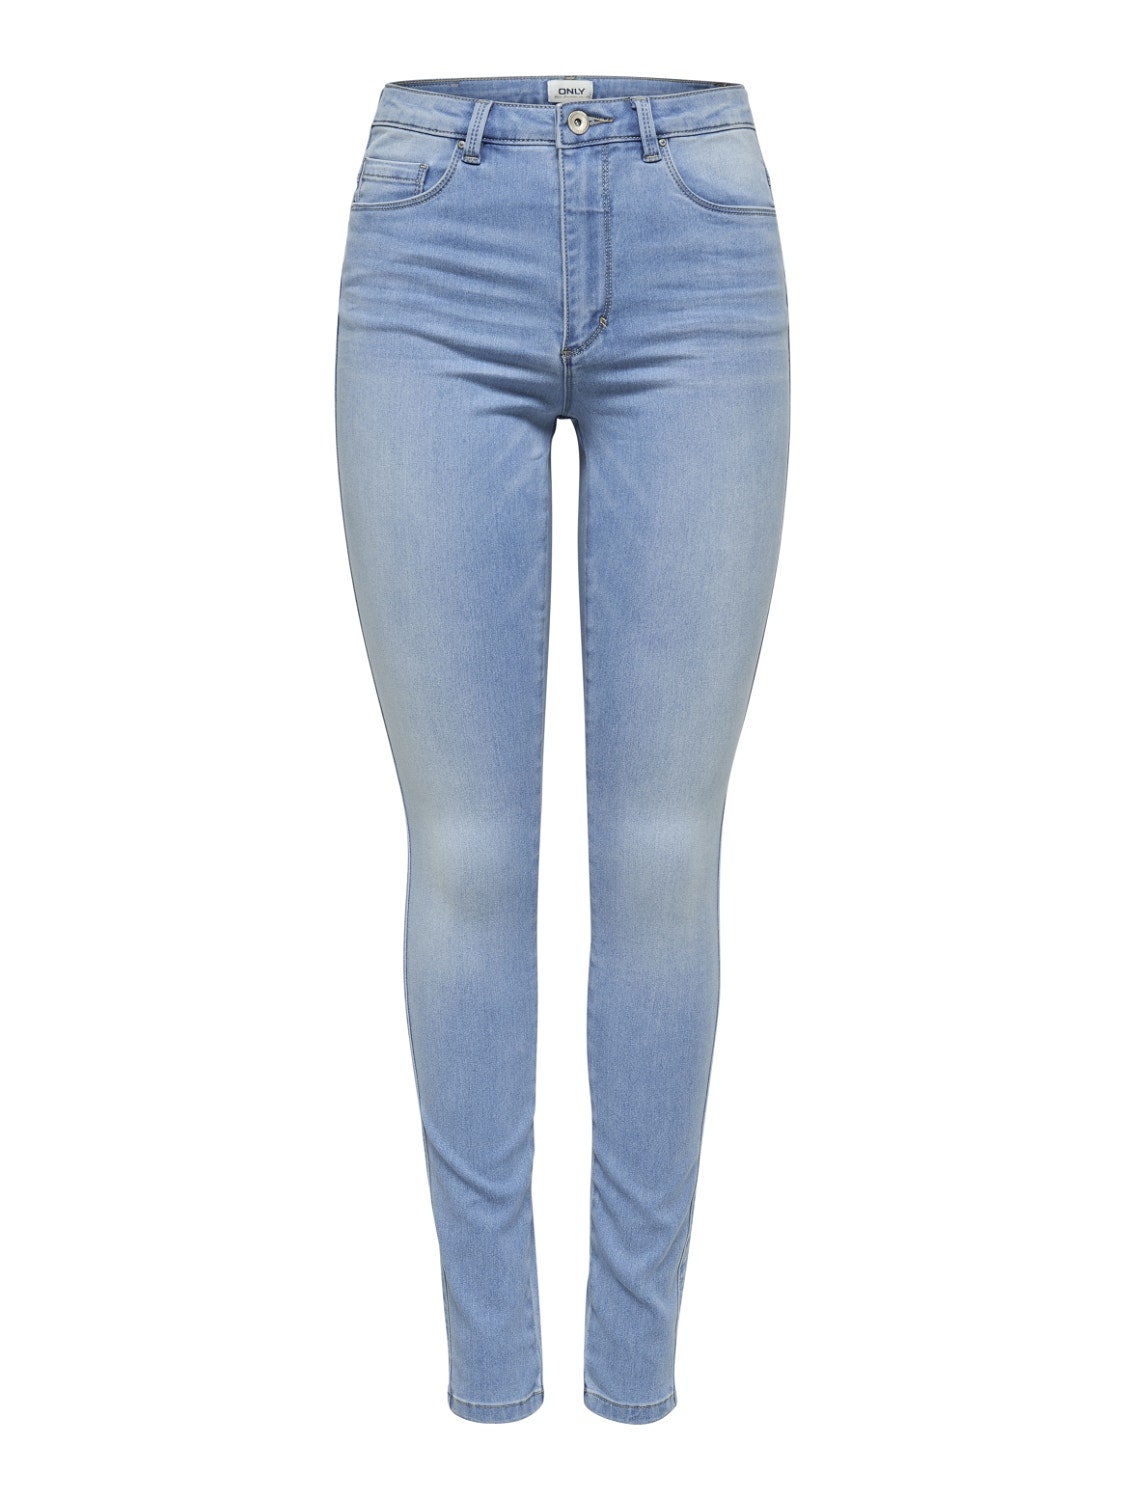 ONLY ONLRoyal HW Skinny Fit Jeans -Light Blue Denim - 15169037